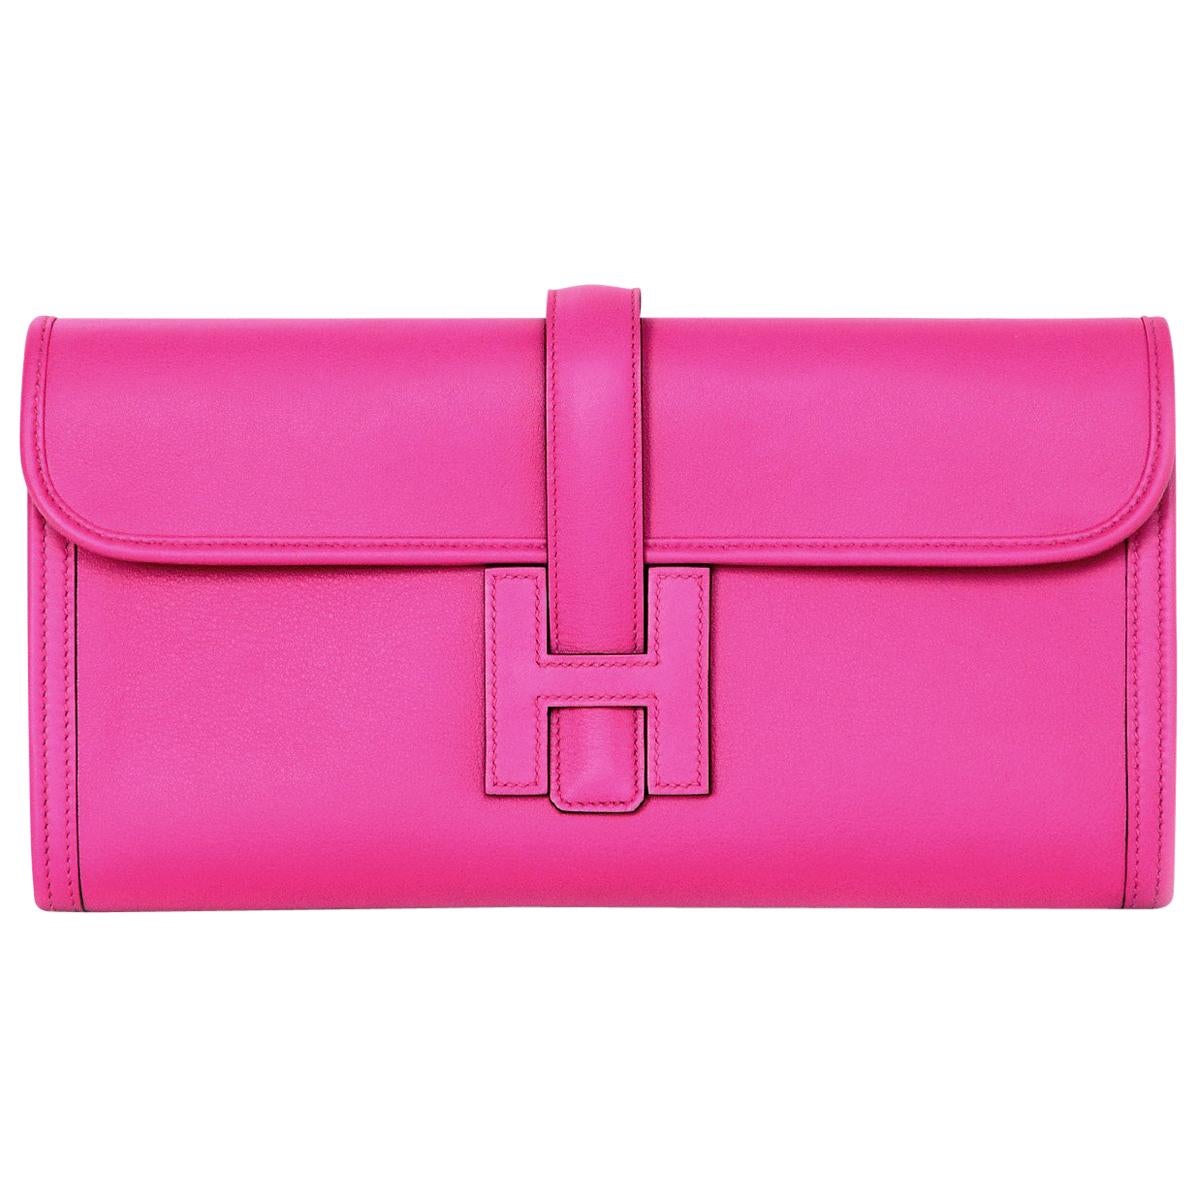 Hermes 2018 Magnolia Pink Swift Leather Jige Elan 29cm H Envelope Clutch Bag